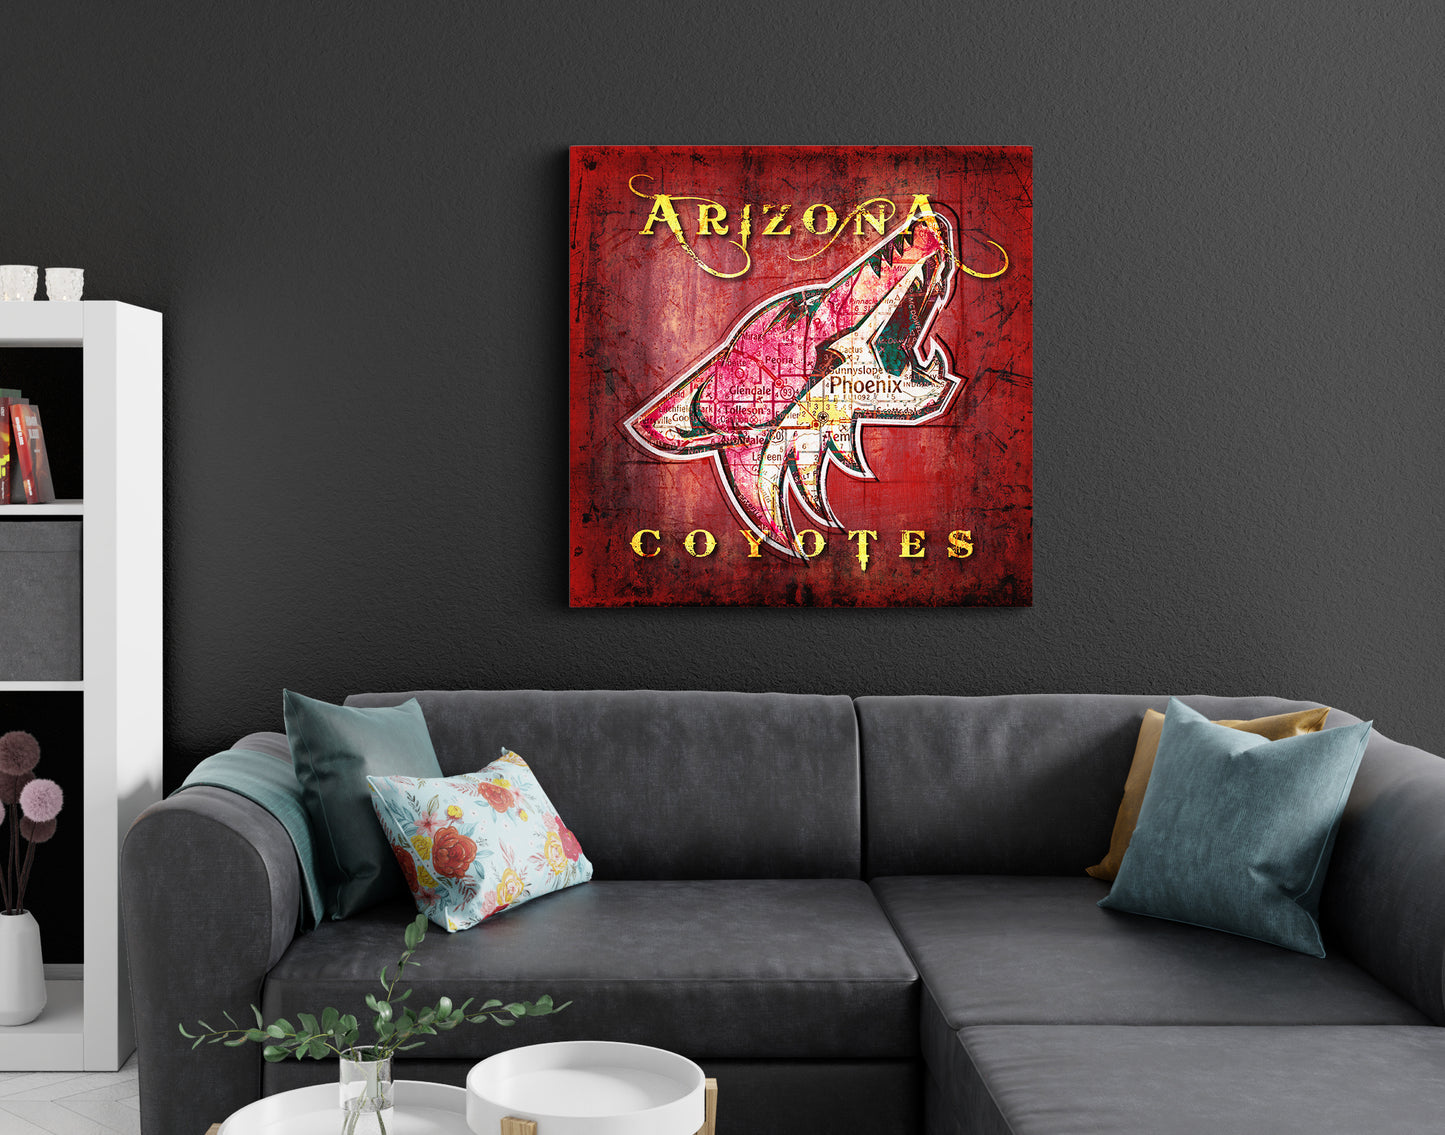 Arizona Coyotes Vintage Canvas Map